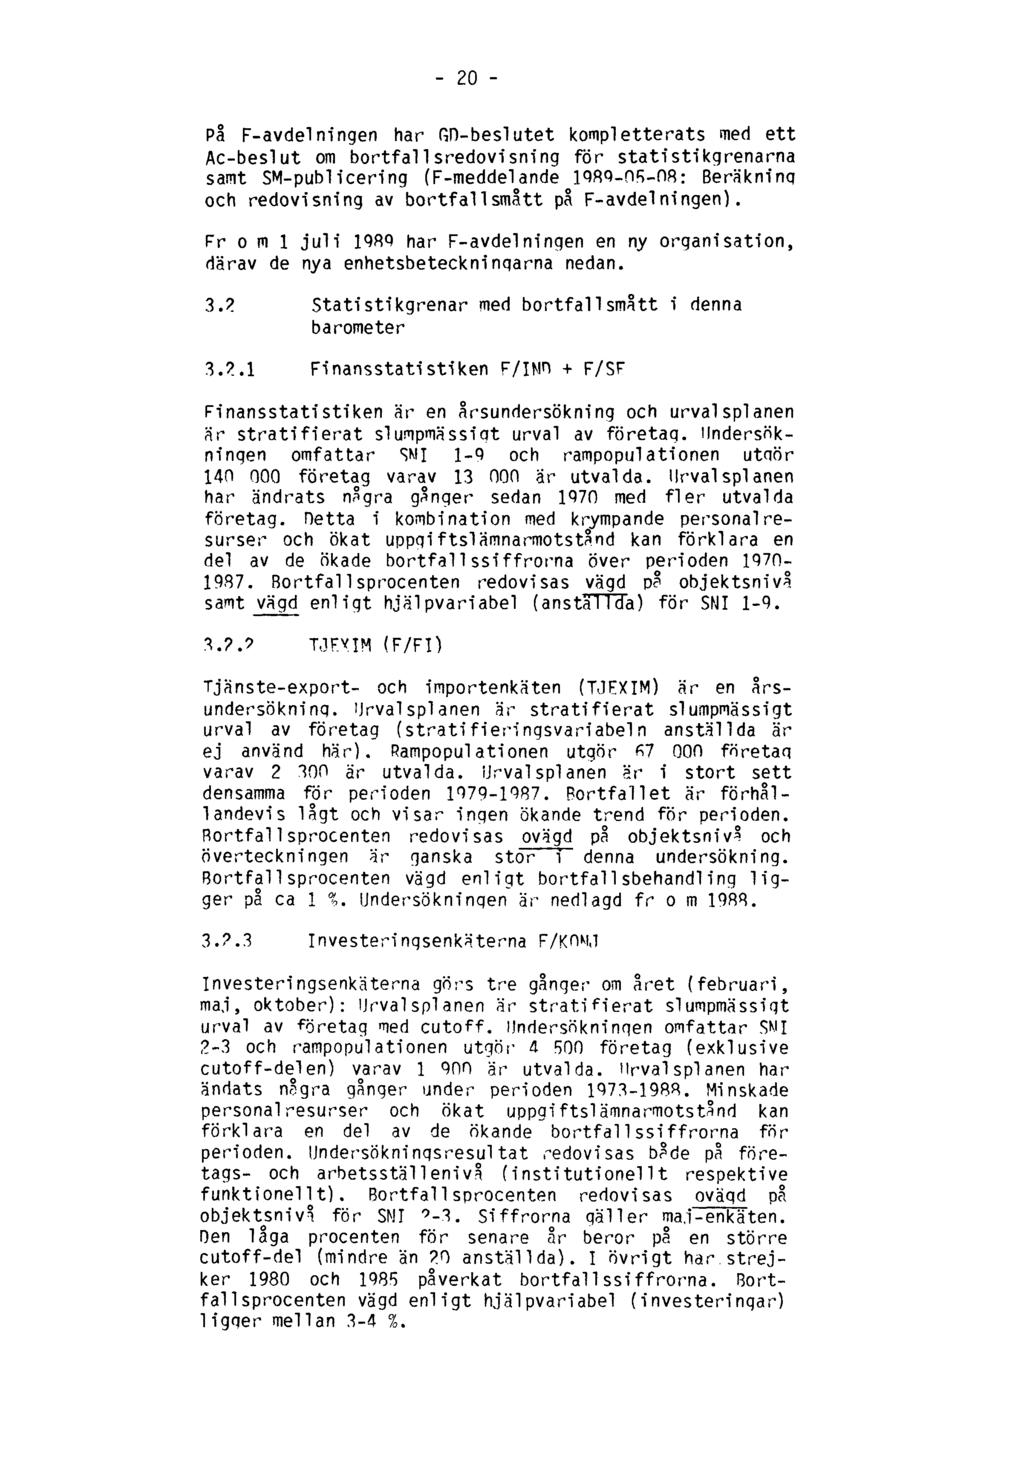 20 På F-avdelningen har GD-beslutet kompletterats med ett Ac-beslut om bortfallsredovism'ng för statistikgrenarna samt SM-publicering (F-meddelande 1989-05-08: Beräkning och redovisning av